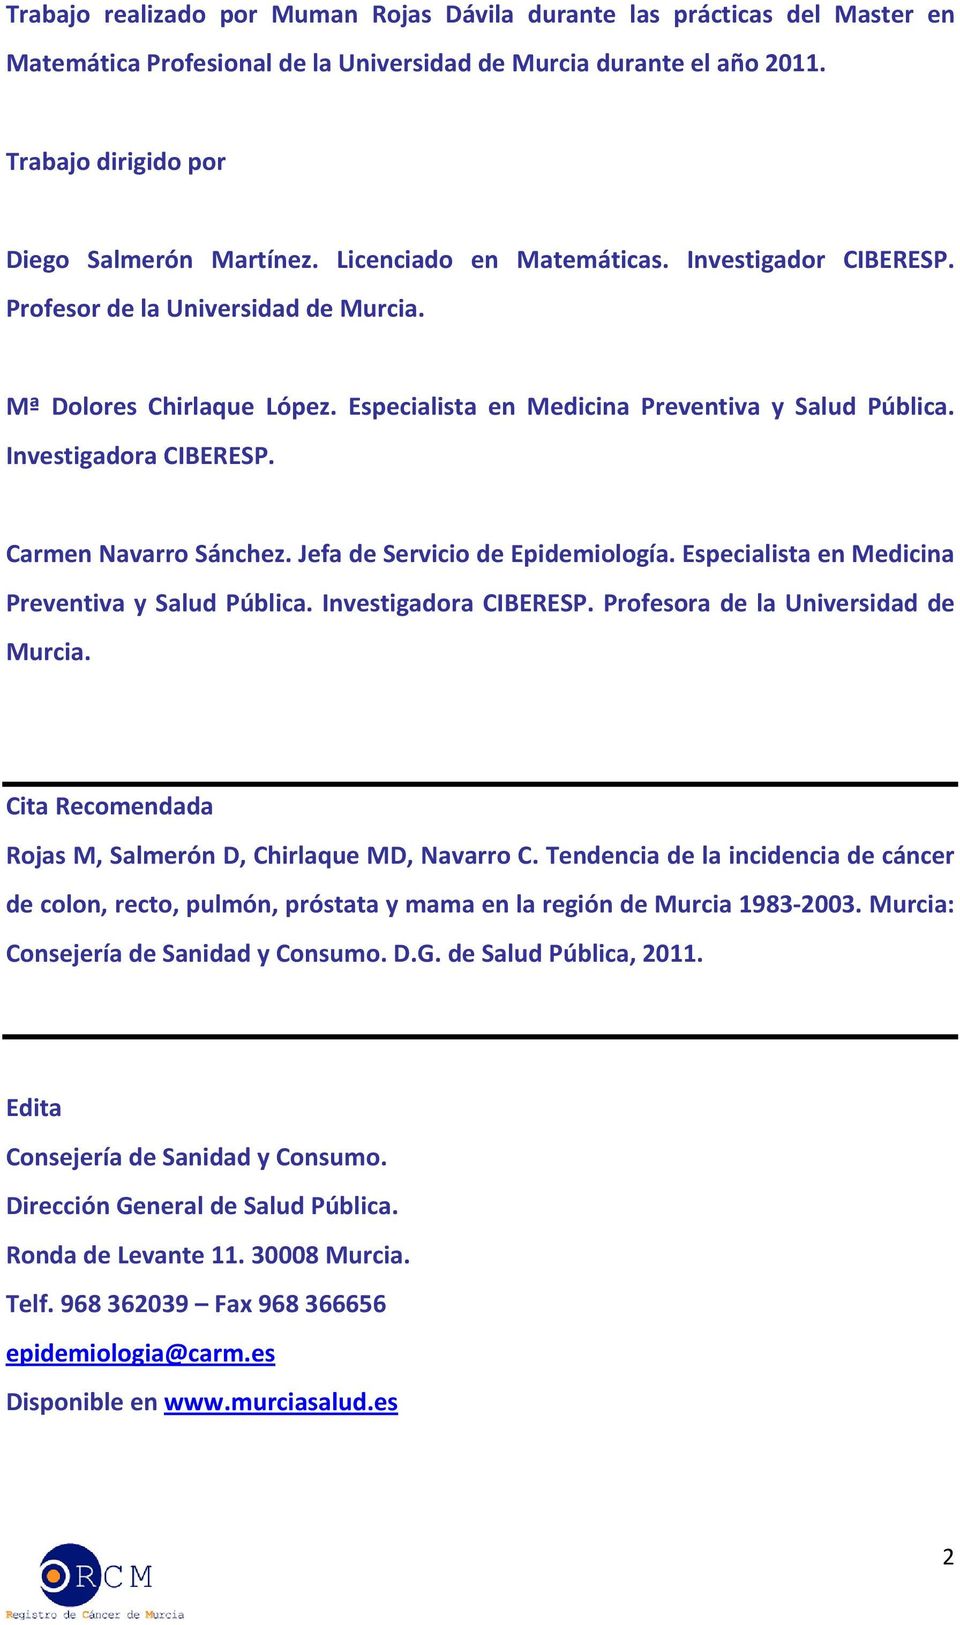 Carmen Navarro Sánchez. Jefa de Servicio de Epidemiología. Especialista en Medicina Preventiva y Salud Pública. Investigadora CIBERESP. Profesora de la Universidad de Murcia.